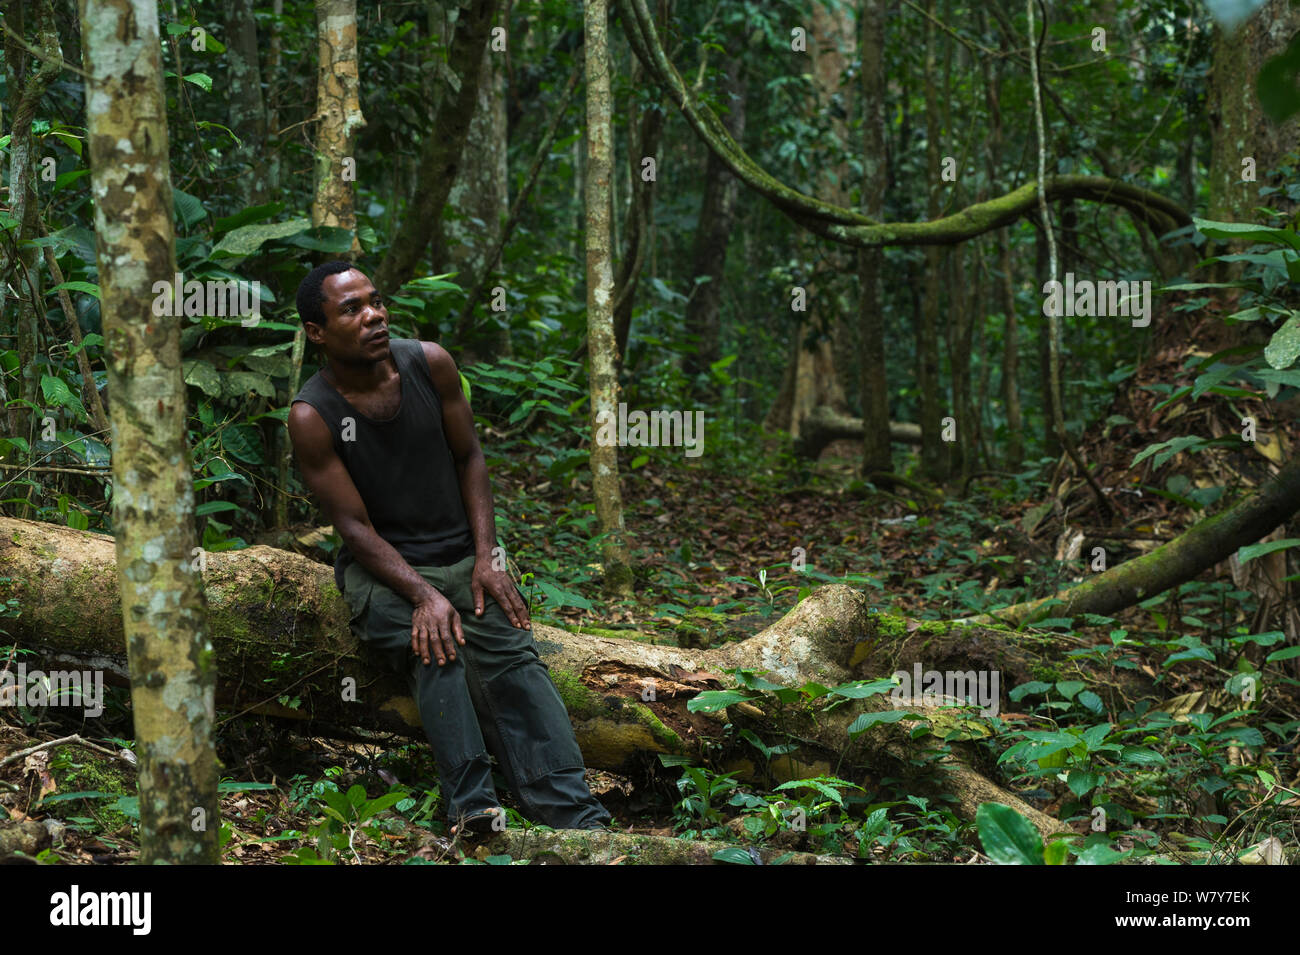 Norbert, locale Wilderness Safari guida pigmeo, nella foresta. Ngaga, Repubblica del Congo (Congo Brazzaville), Africa, Giugno 2013. Foto Stock